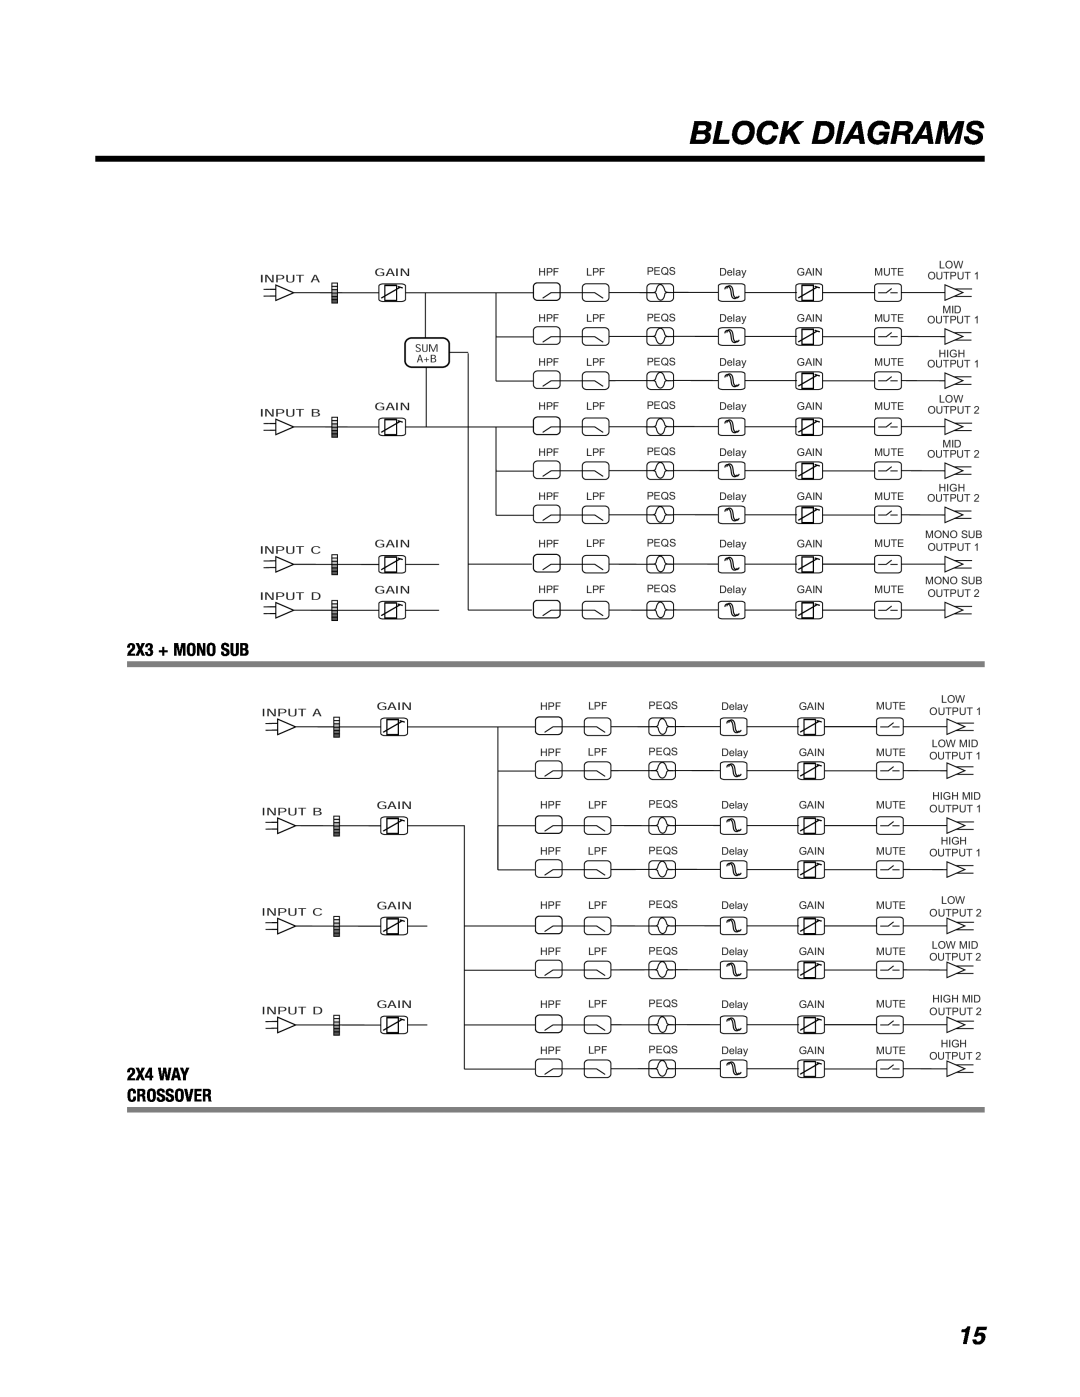 BBE DS48 manual Block Diagrams, 2X3 + MONO SUB, 2X4 WAY CROSSOVER 